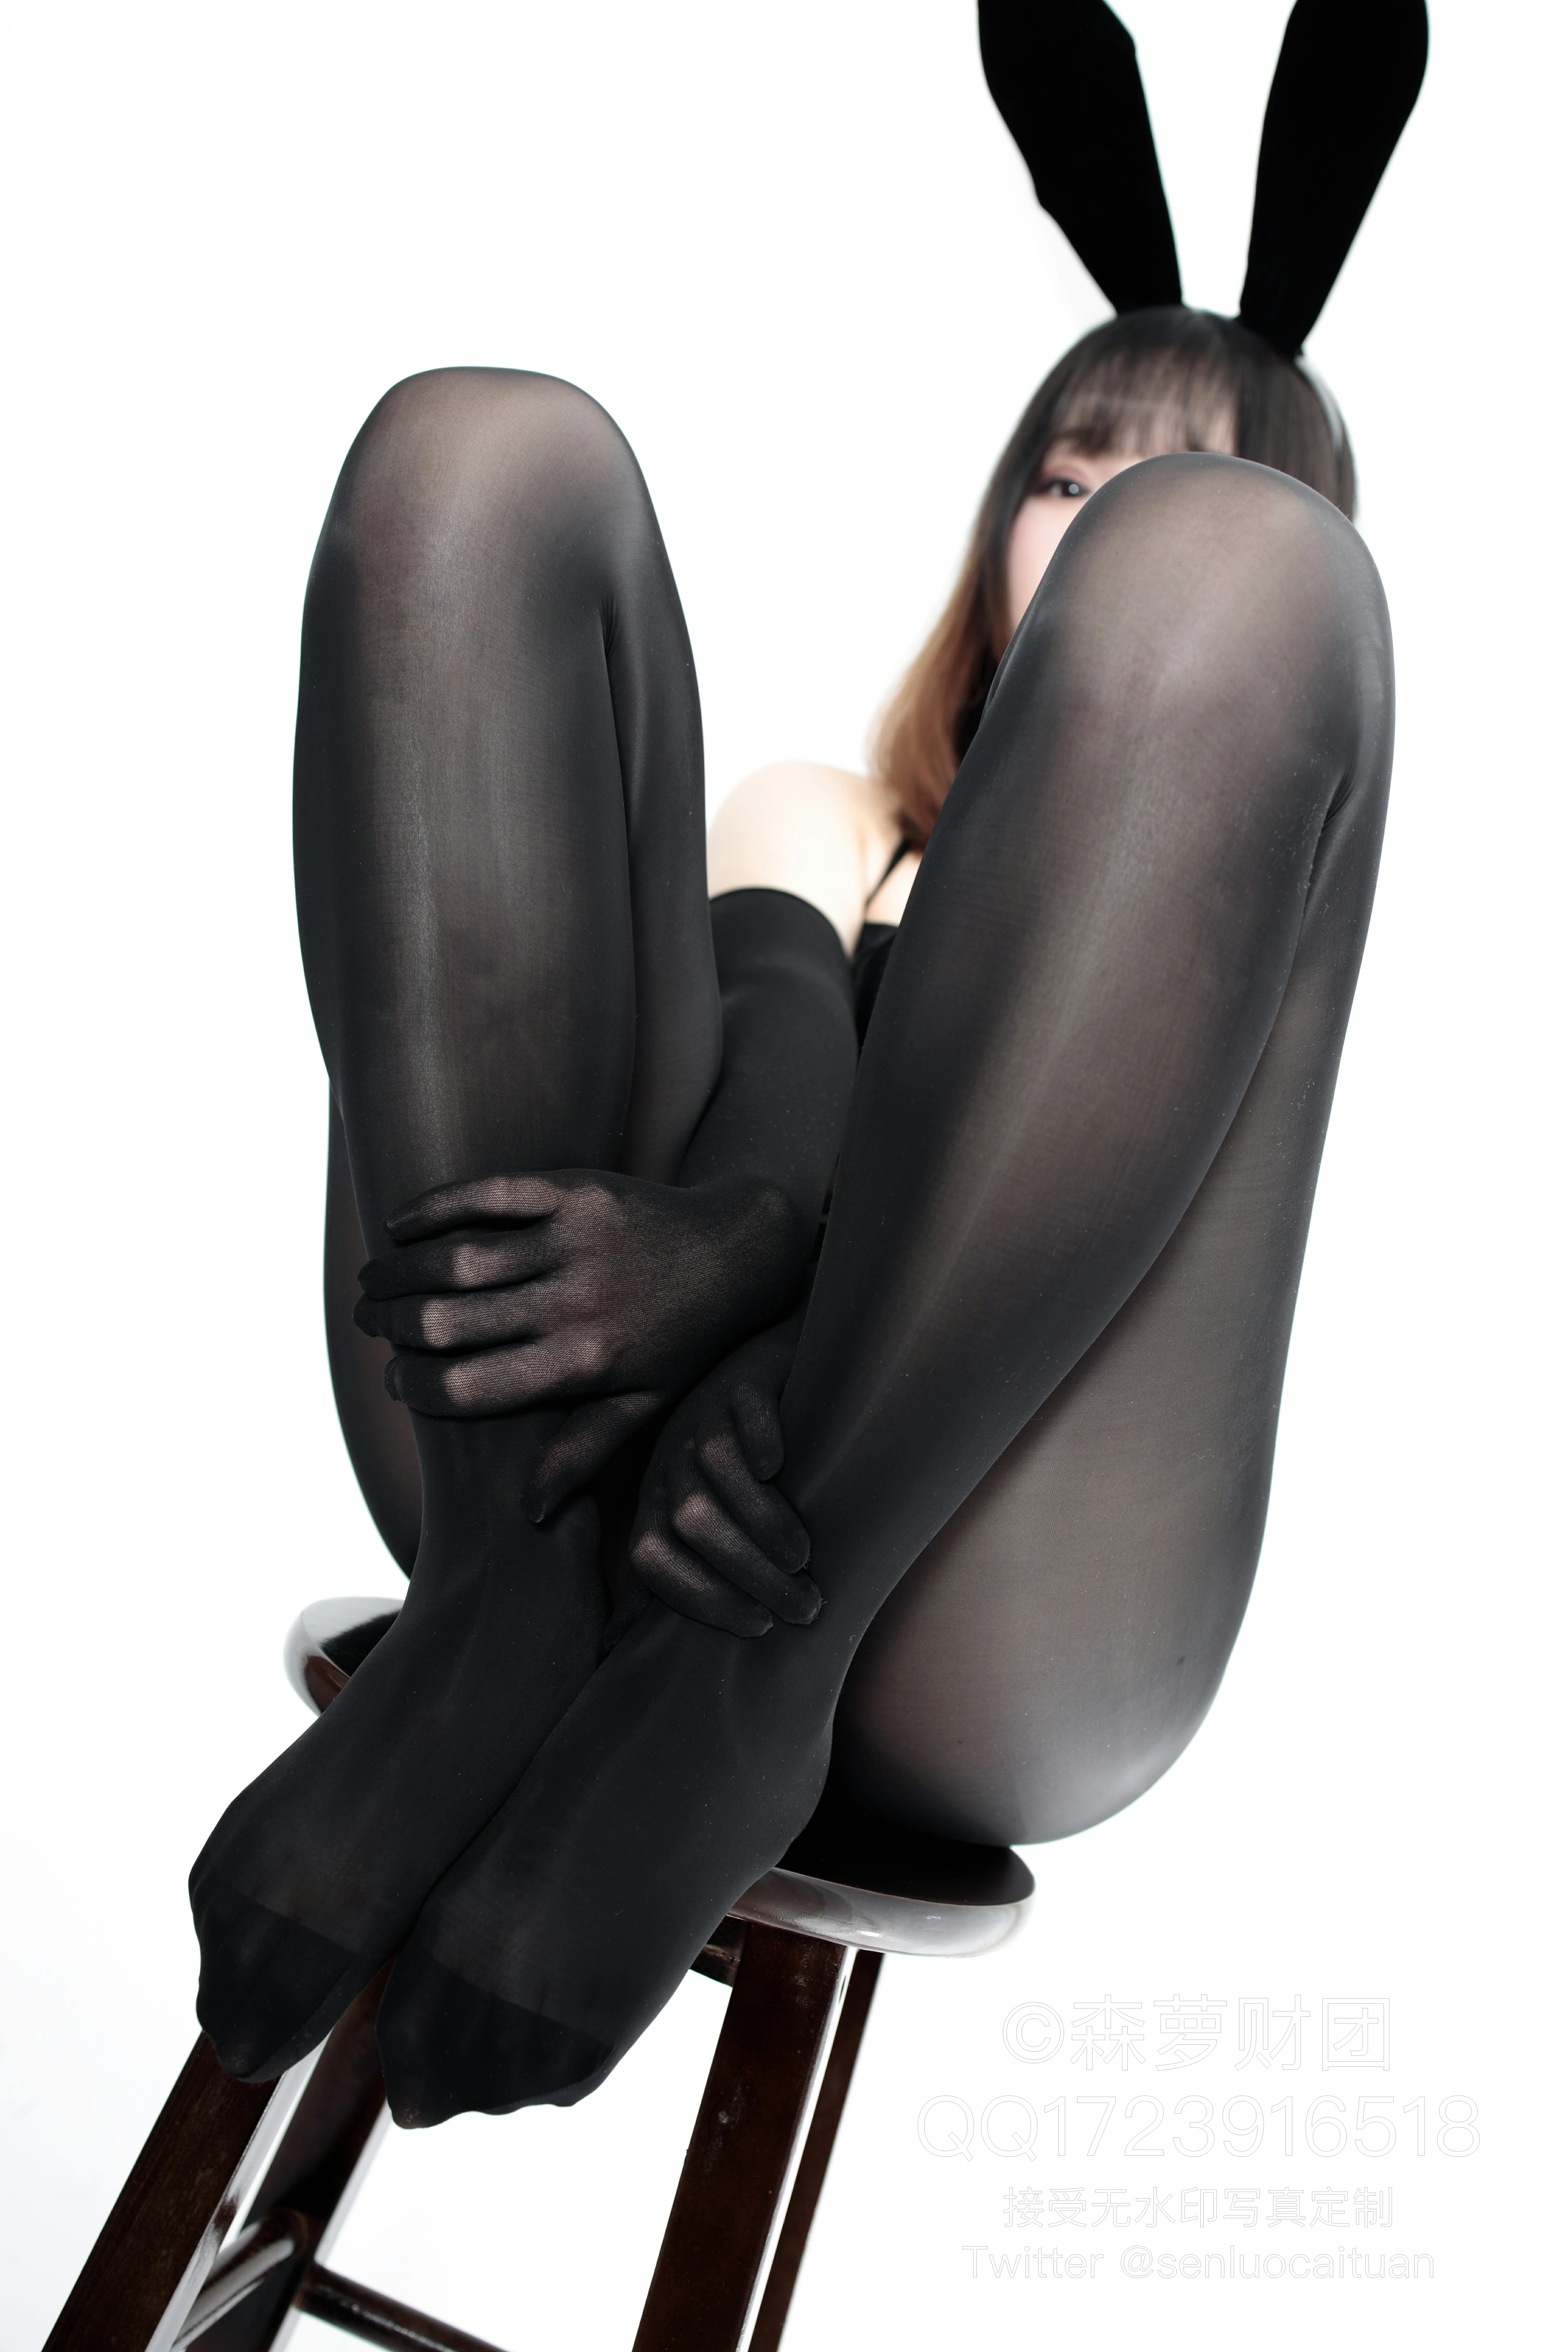 [森萝财团]WTMSB-002 性感萝莉兔女郎黑色制服内衣加黑色情趣渔网袜私房写真集,